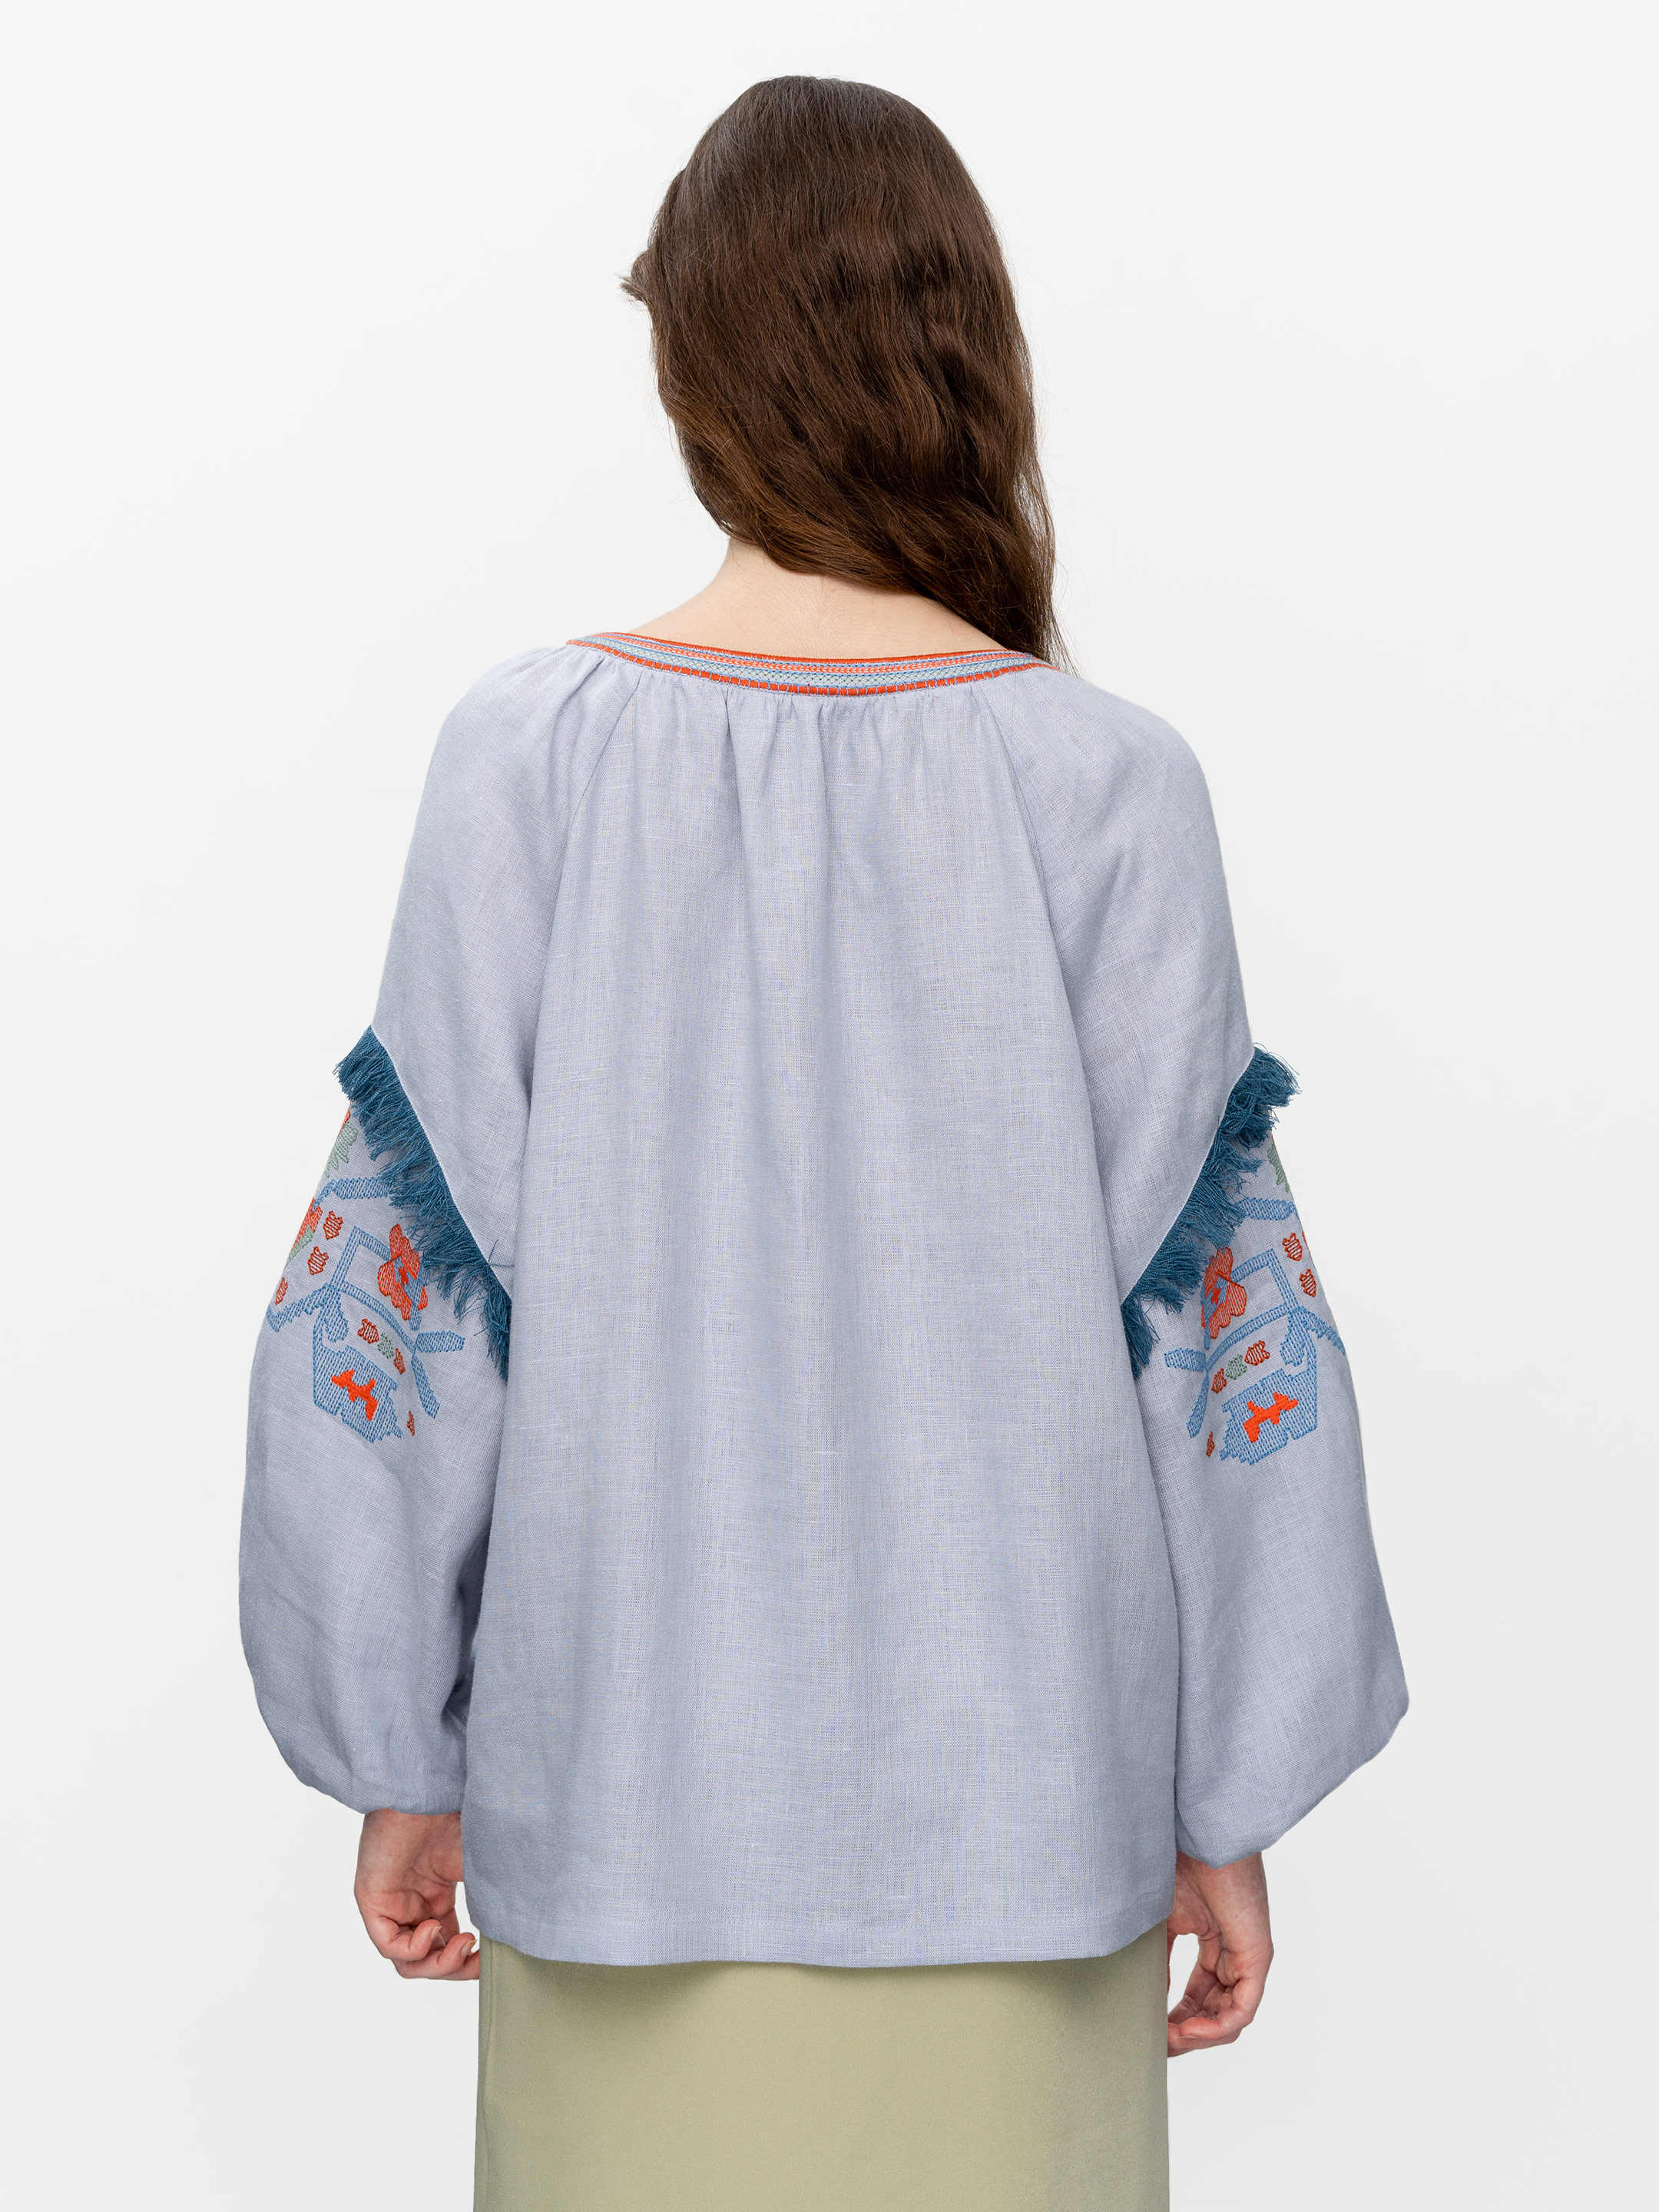 Women's embroidered shirt with fringe Oksamyt Blue - photo 2